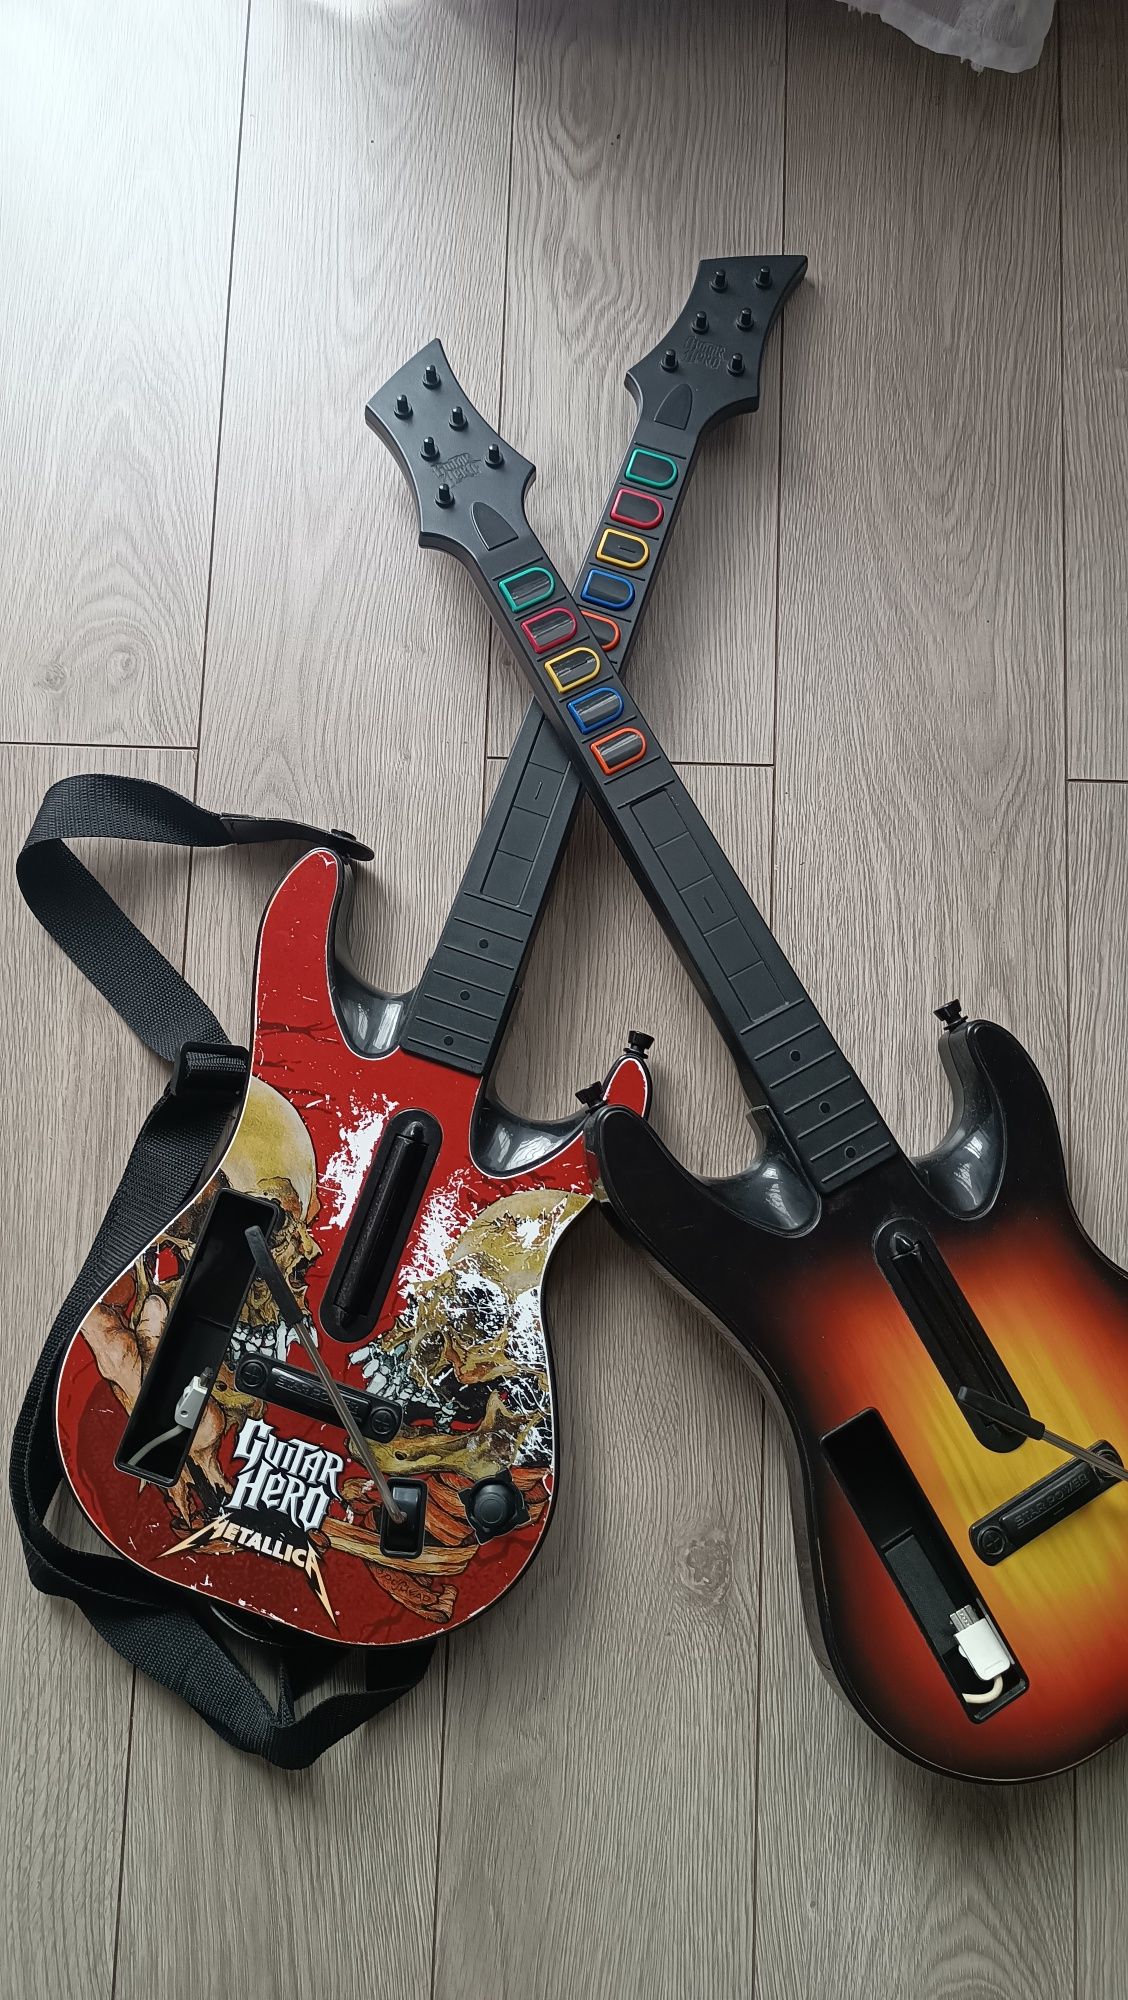 Konsola Nintendo Wii perkusja adapter 2 gitary gry